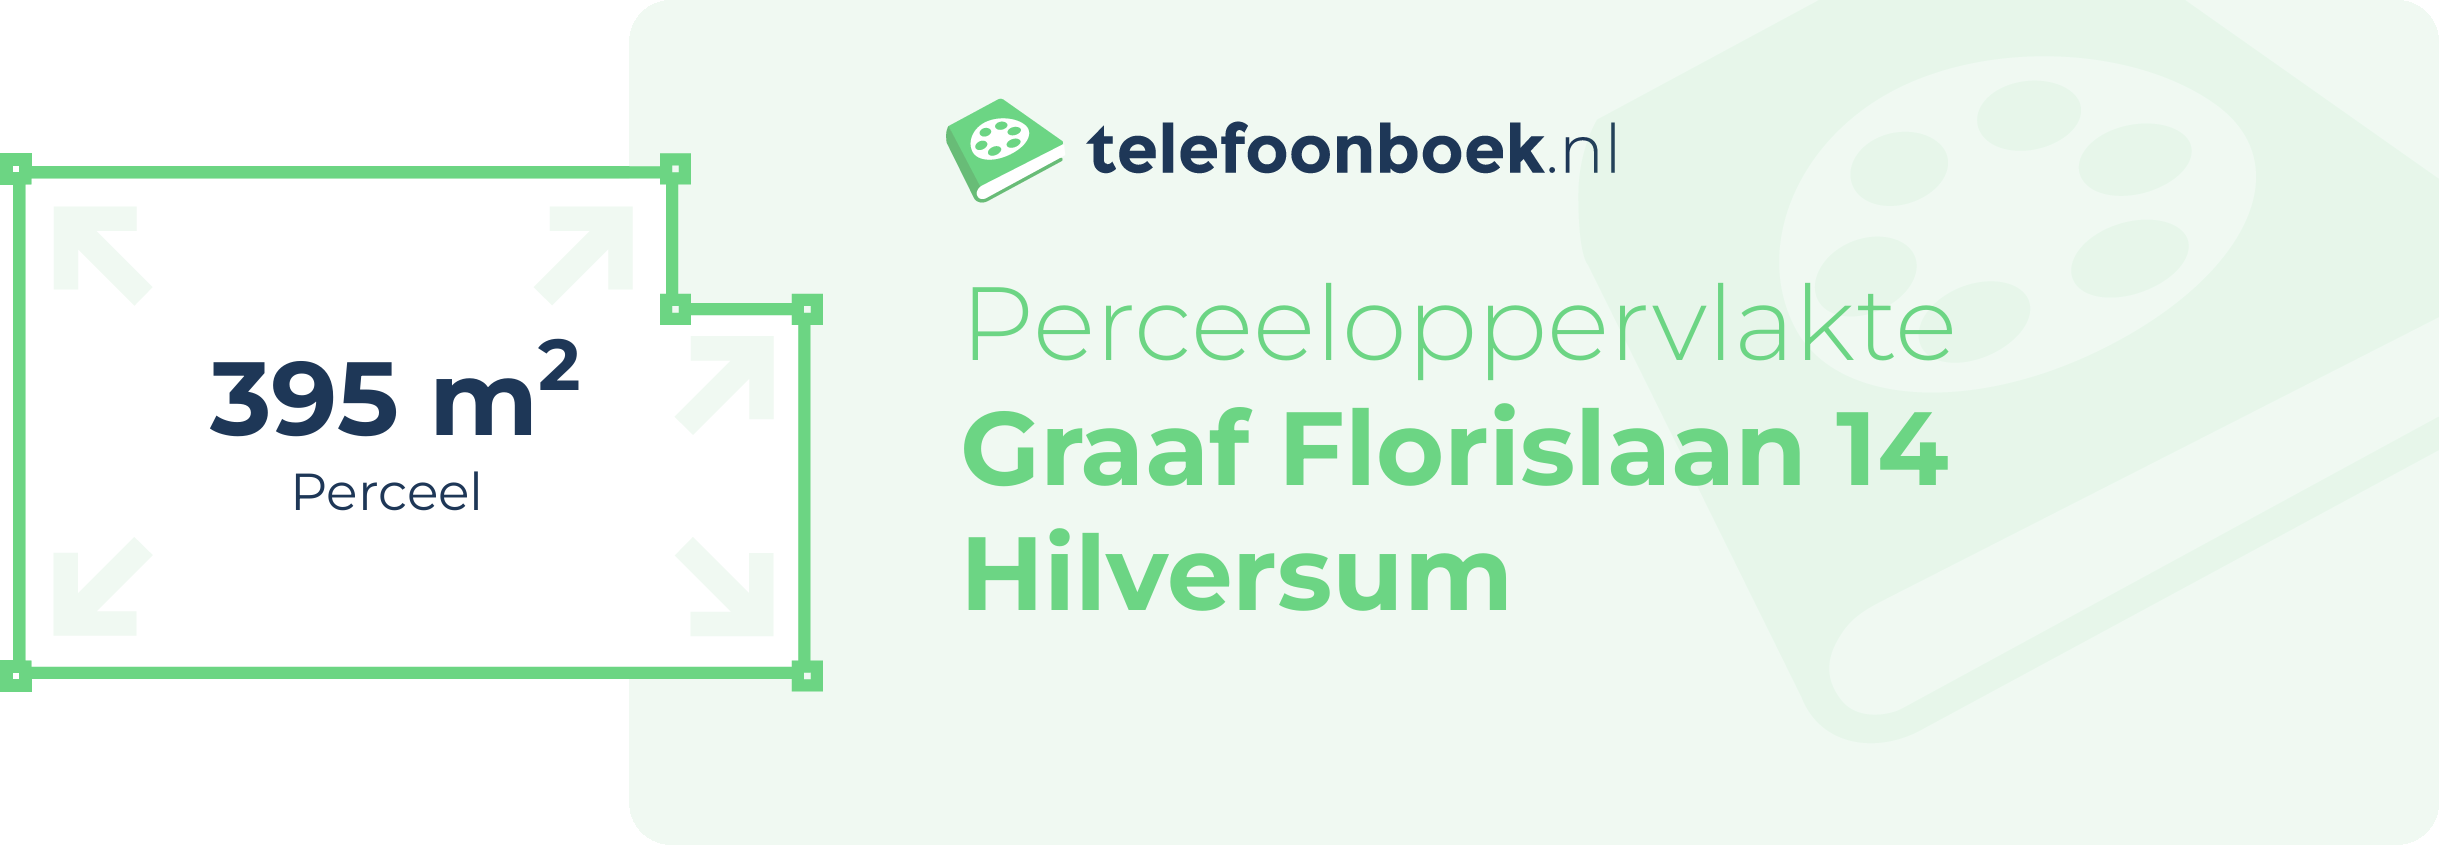 Perceeloppervlakte Graaf Florislaan 14 Hilversum